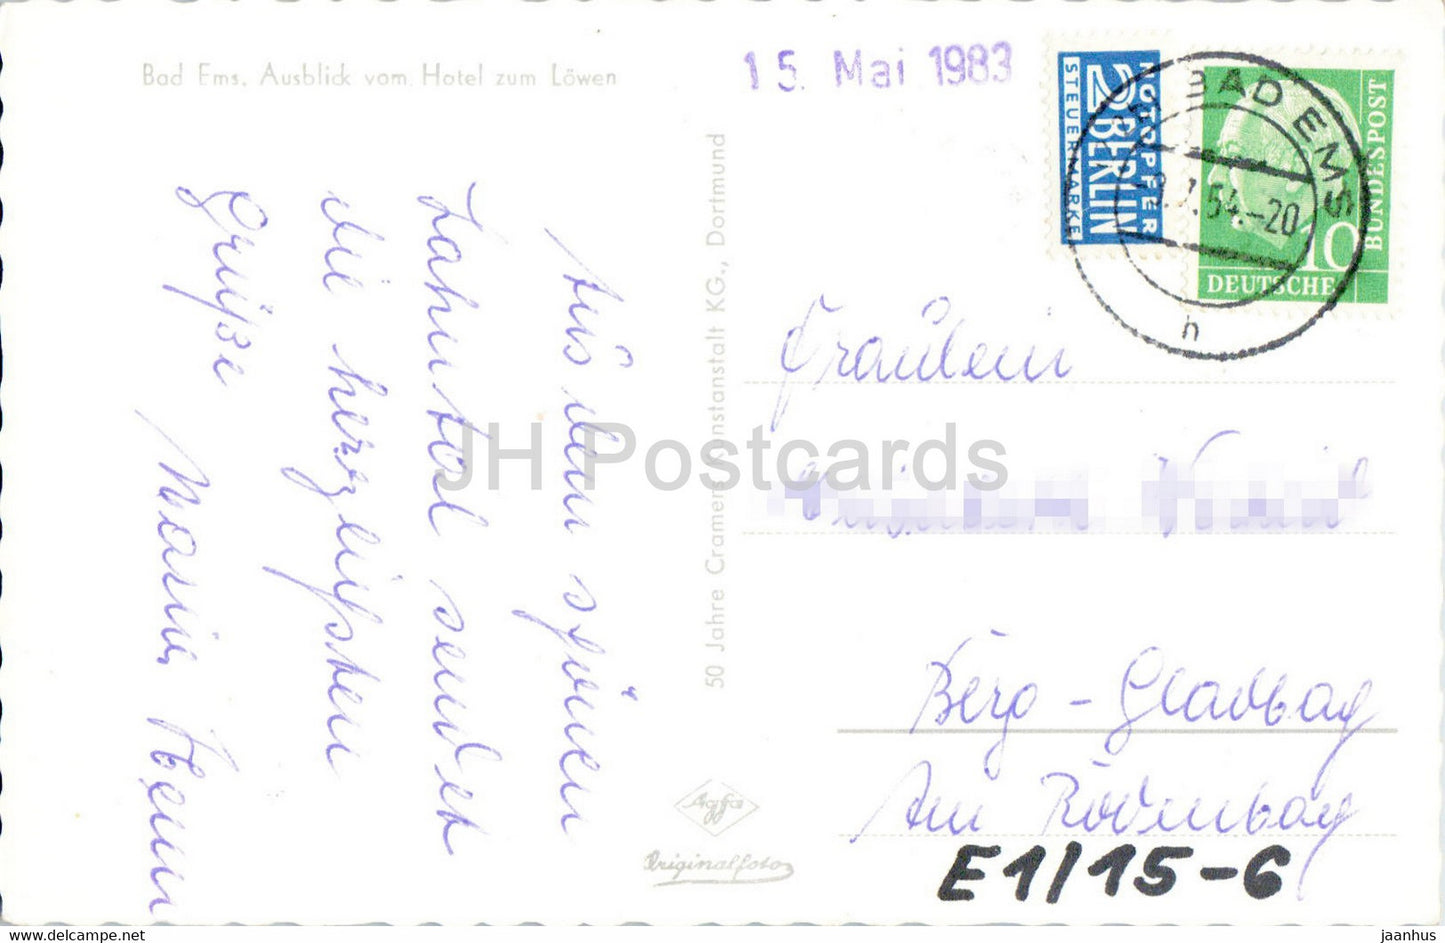 Bad Ems - Ausblick vom Hotel zum Löwen - Brücke - alte Postkarte - 1954 - Deutschland - gebraucht